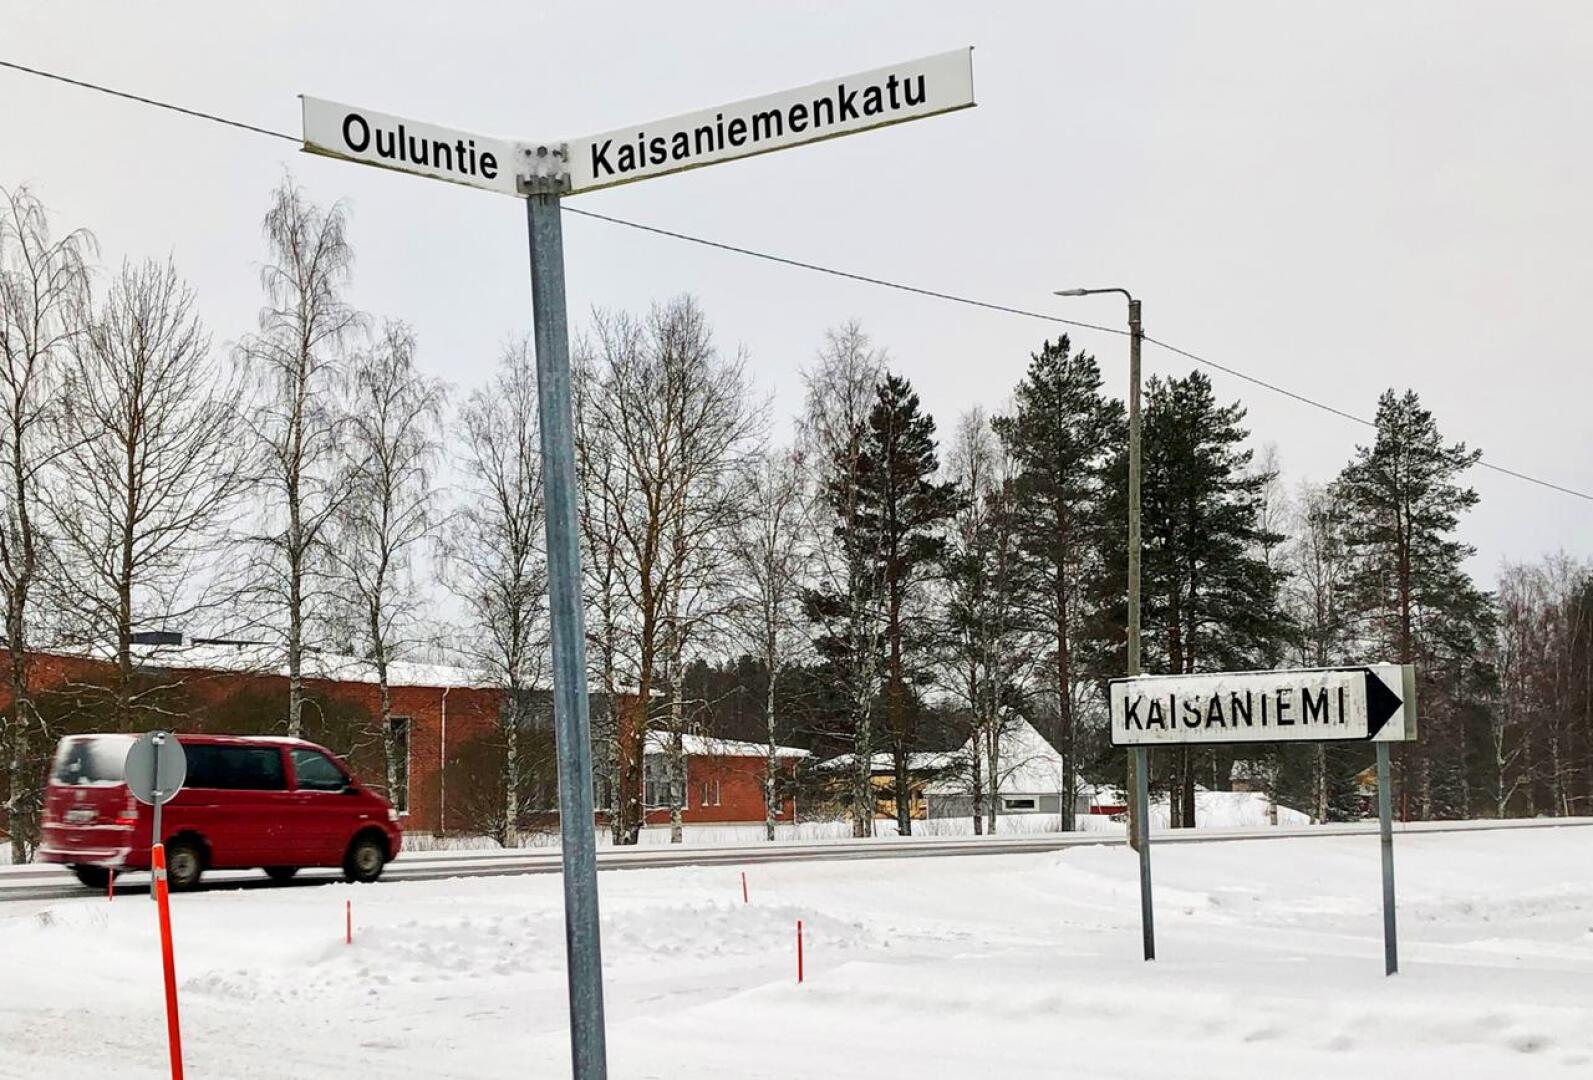 Ylivieskan kaupunki on kiirehtinyt Ouluntien ja Kaisaniemenkadun liikennejärjestelyjen tekemistä. Kaisaniemenkadulta on suunniteltu paloaseman ja Rauhanyhdistyksen välistä uusi suora liikenneyhteys keskustaan.